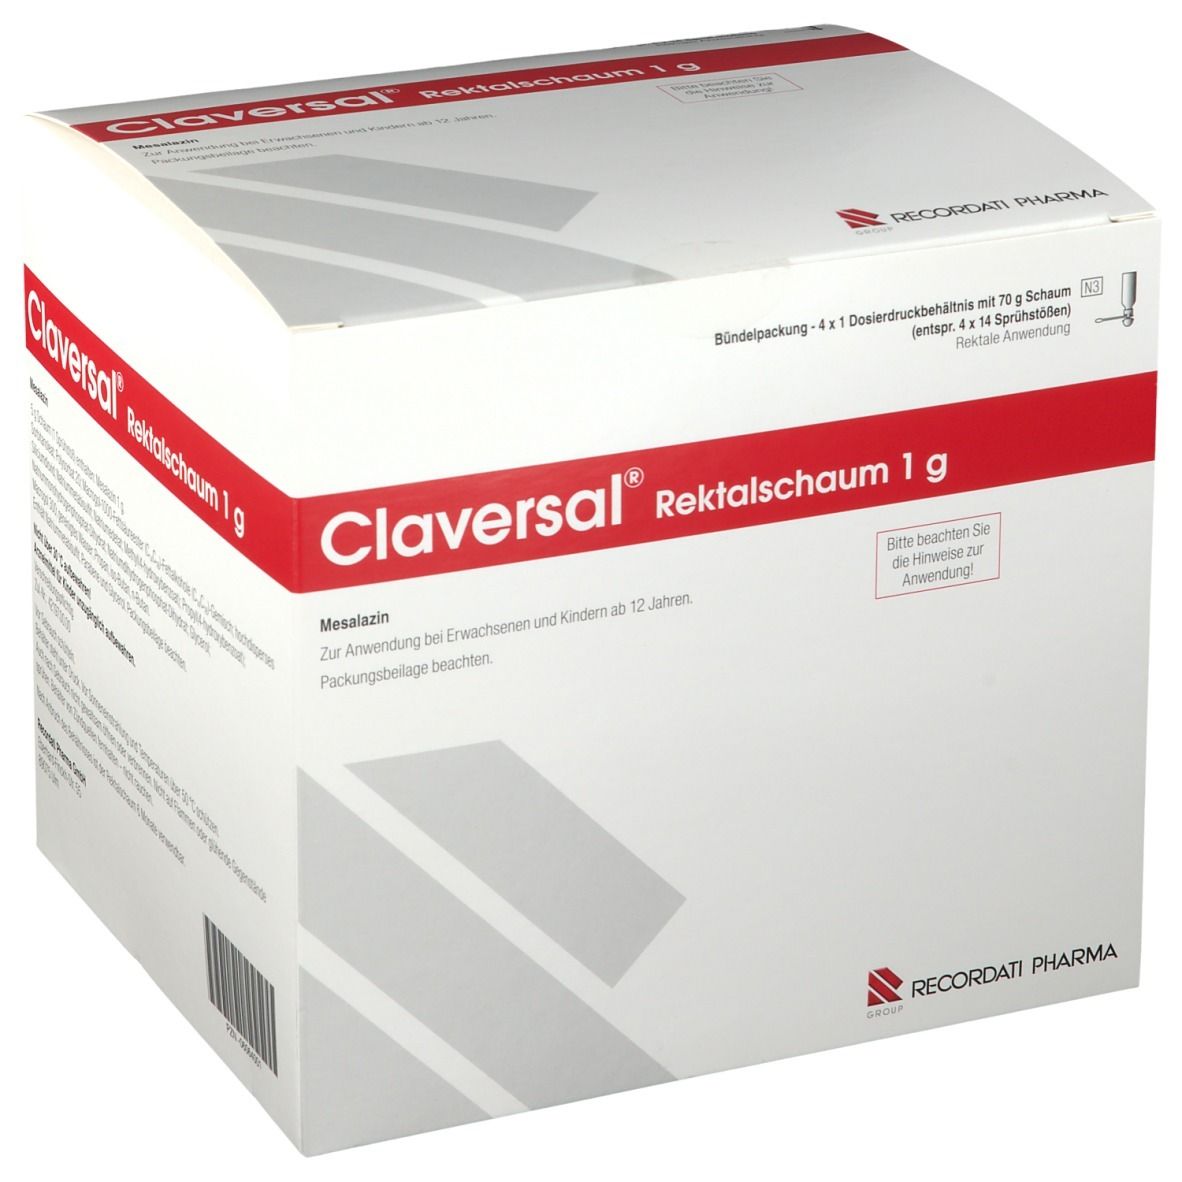 Claversal® Rektalschaum 1 g